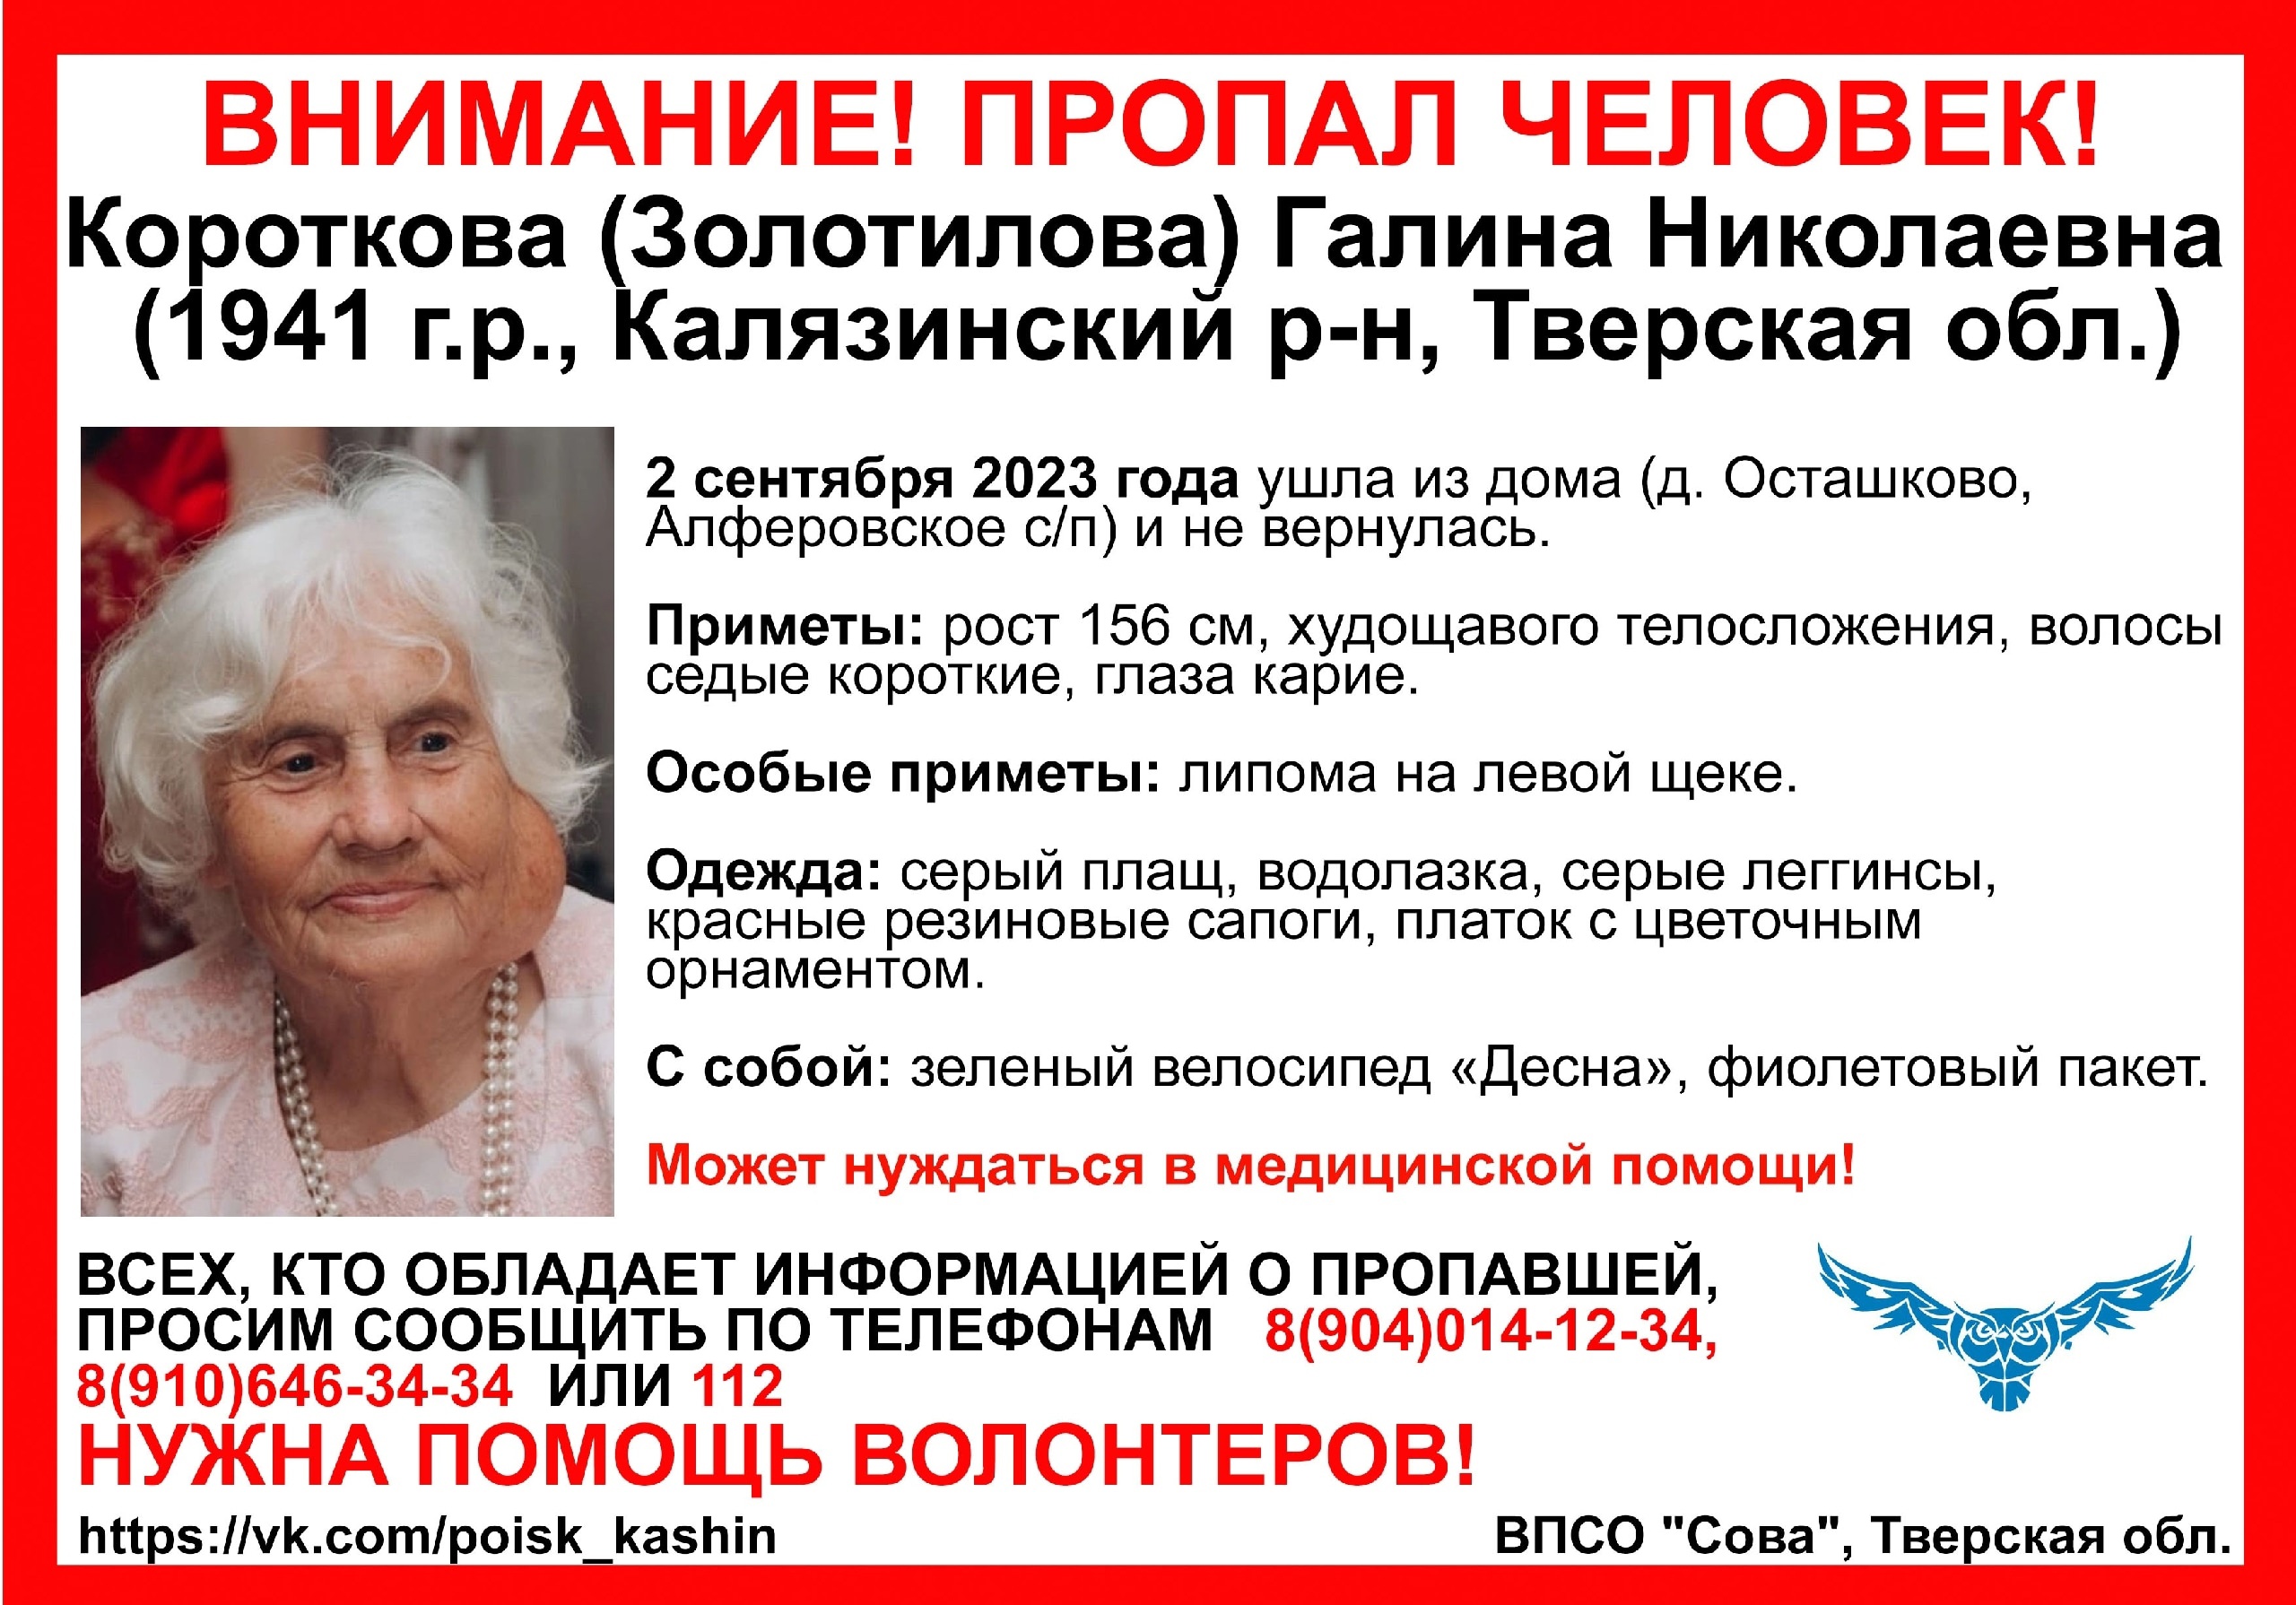 В Тверской области разыскивают пенсионерку с липомой на щеке